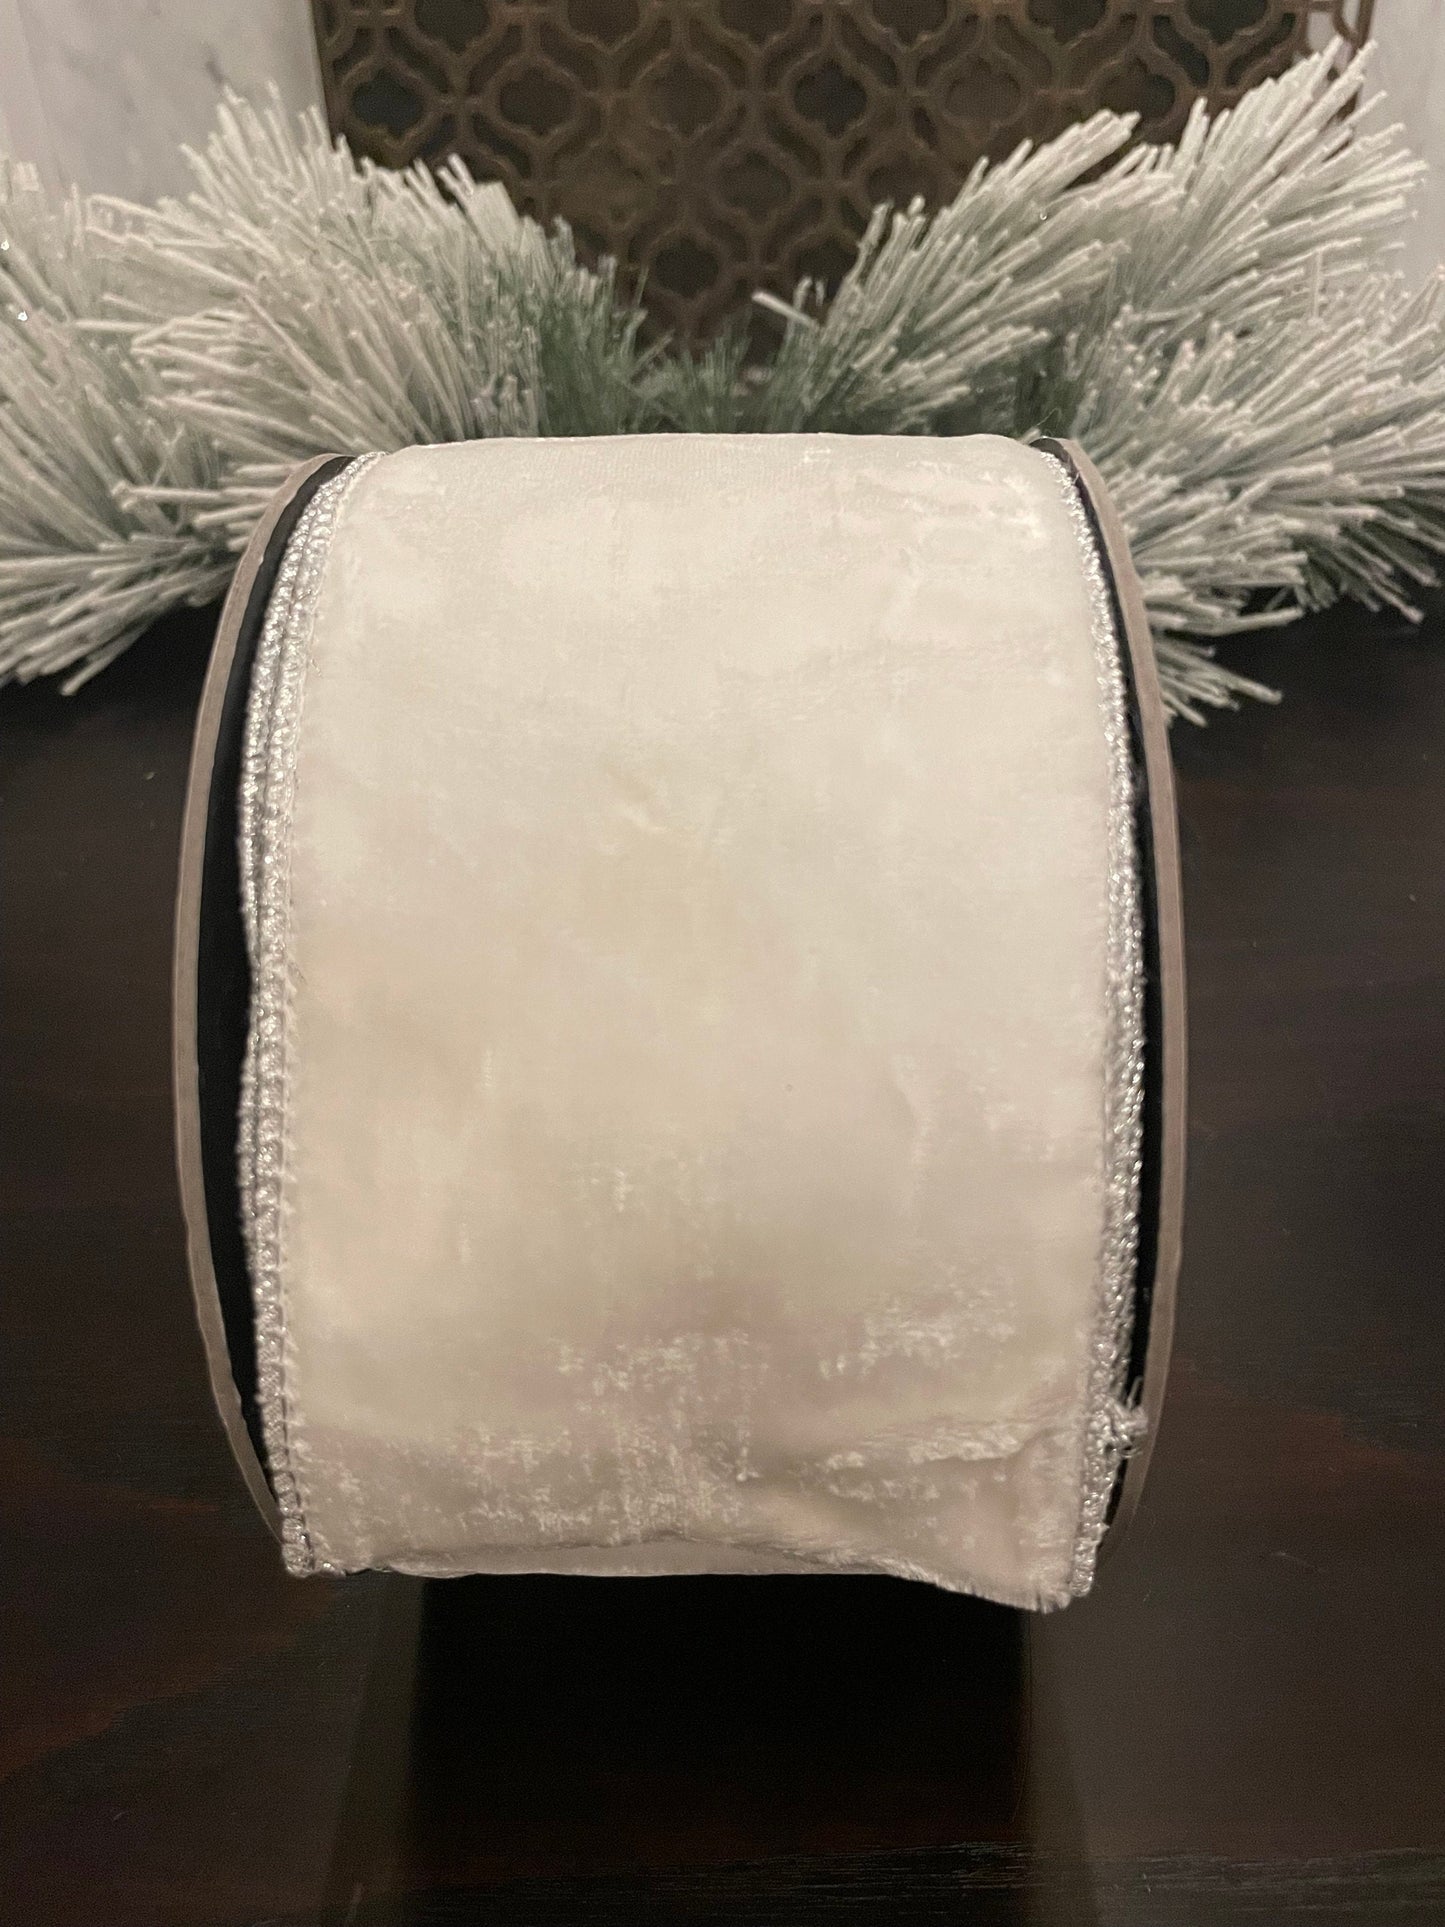 4”x 10 yds. Designer lush velvet winter white, metallic silver back ribbon. Wired. D. Stevens.